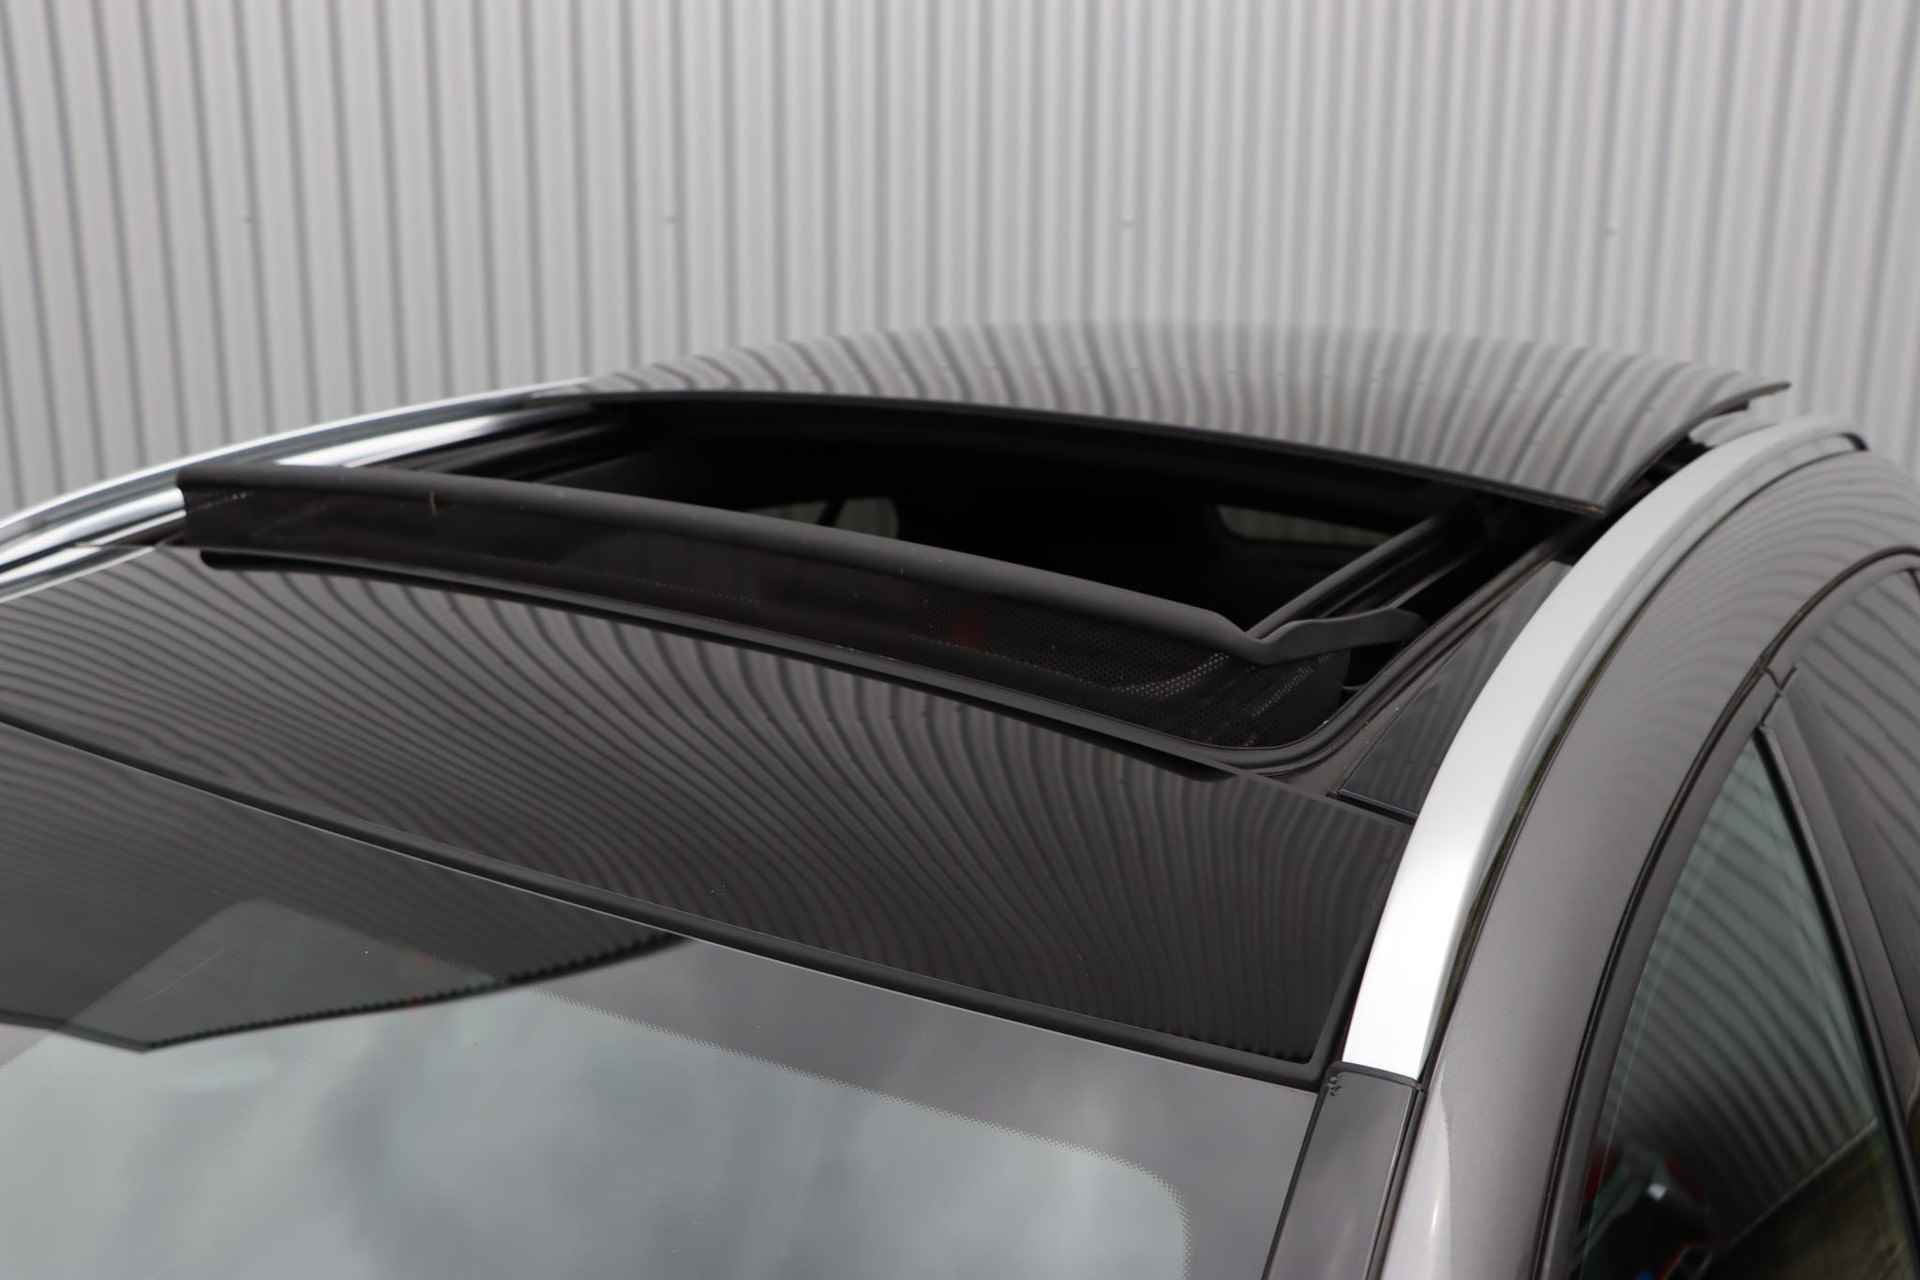 Mercedes-Benz GLA-klasse AMG 45 4MATIC | Panorama dak | Achteruitrijcamera | elektrische bestuurdersstoel | LED koplampen | elektronische achterklep | - 2/38